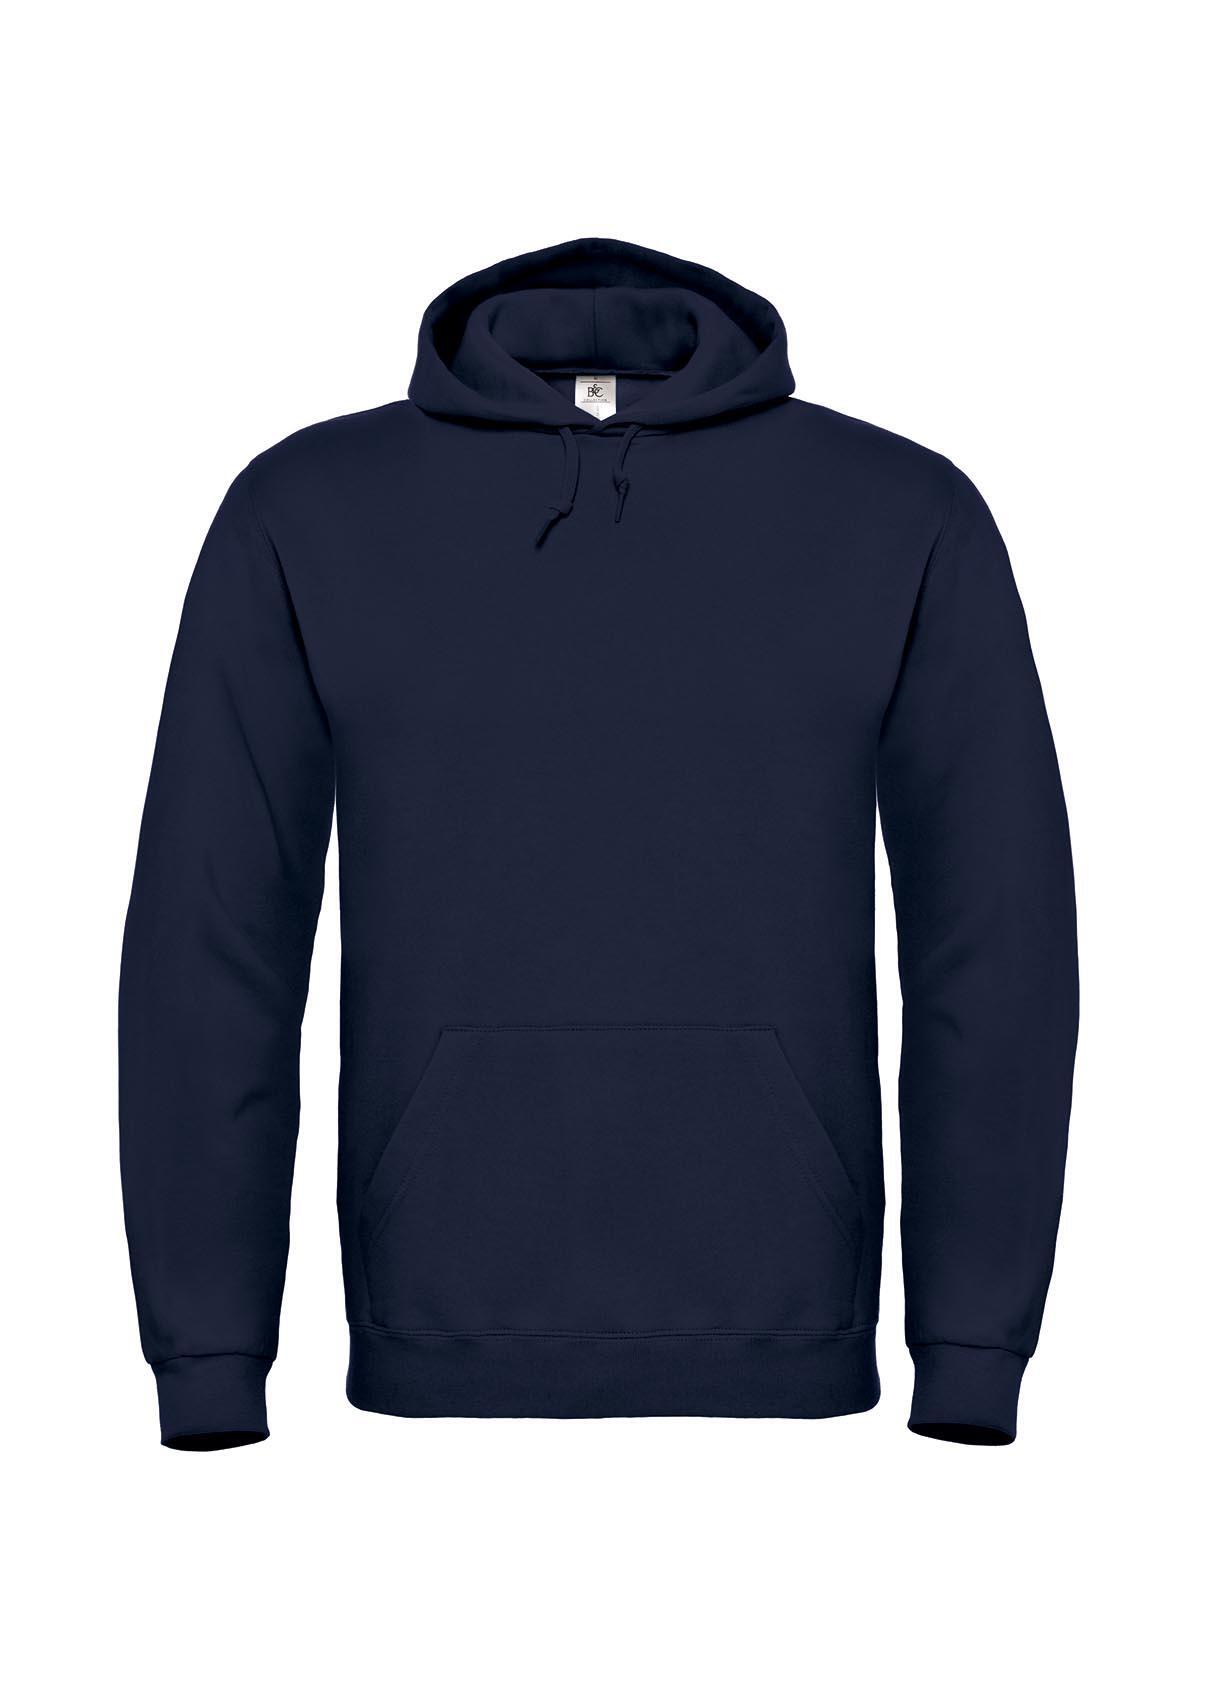 Donkerblauwe Hoodie sweater voor mannen bedrukbaar